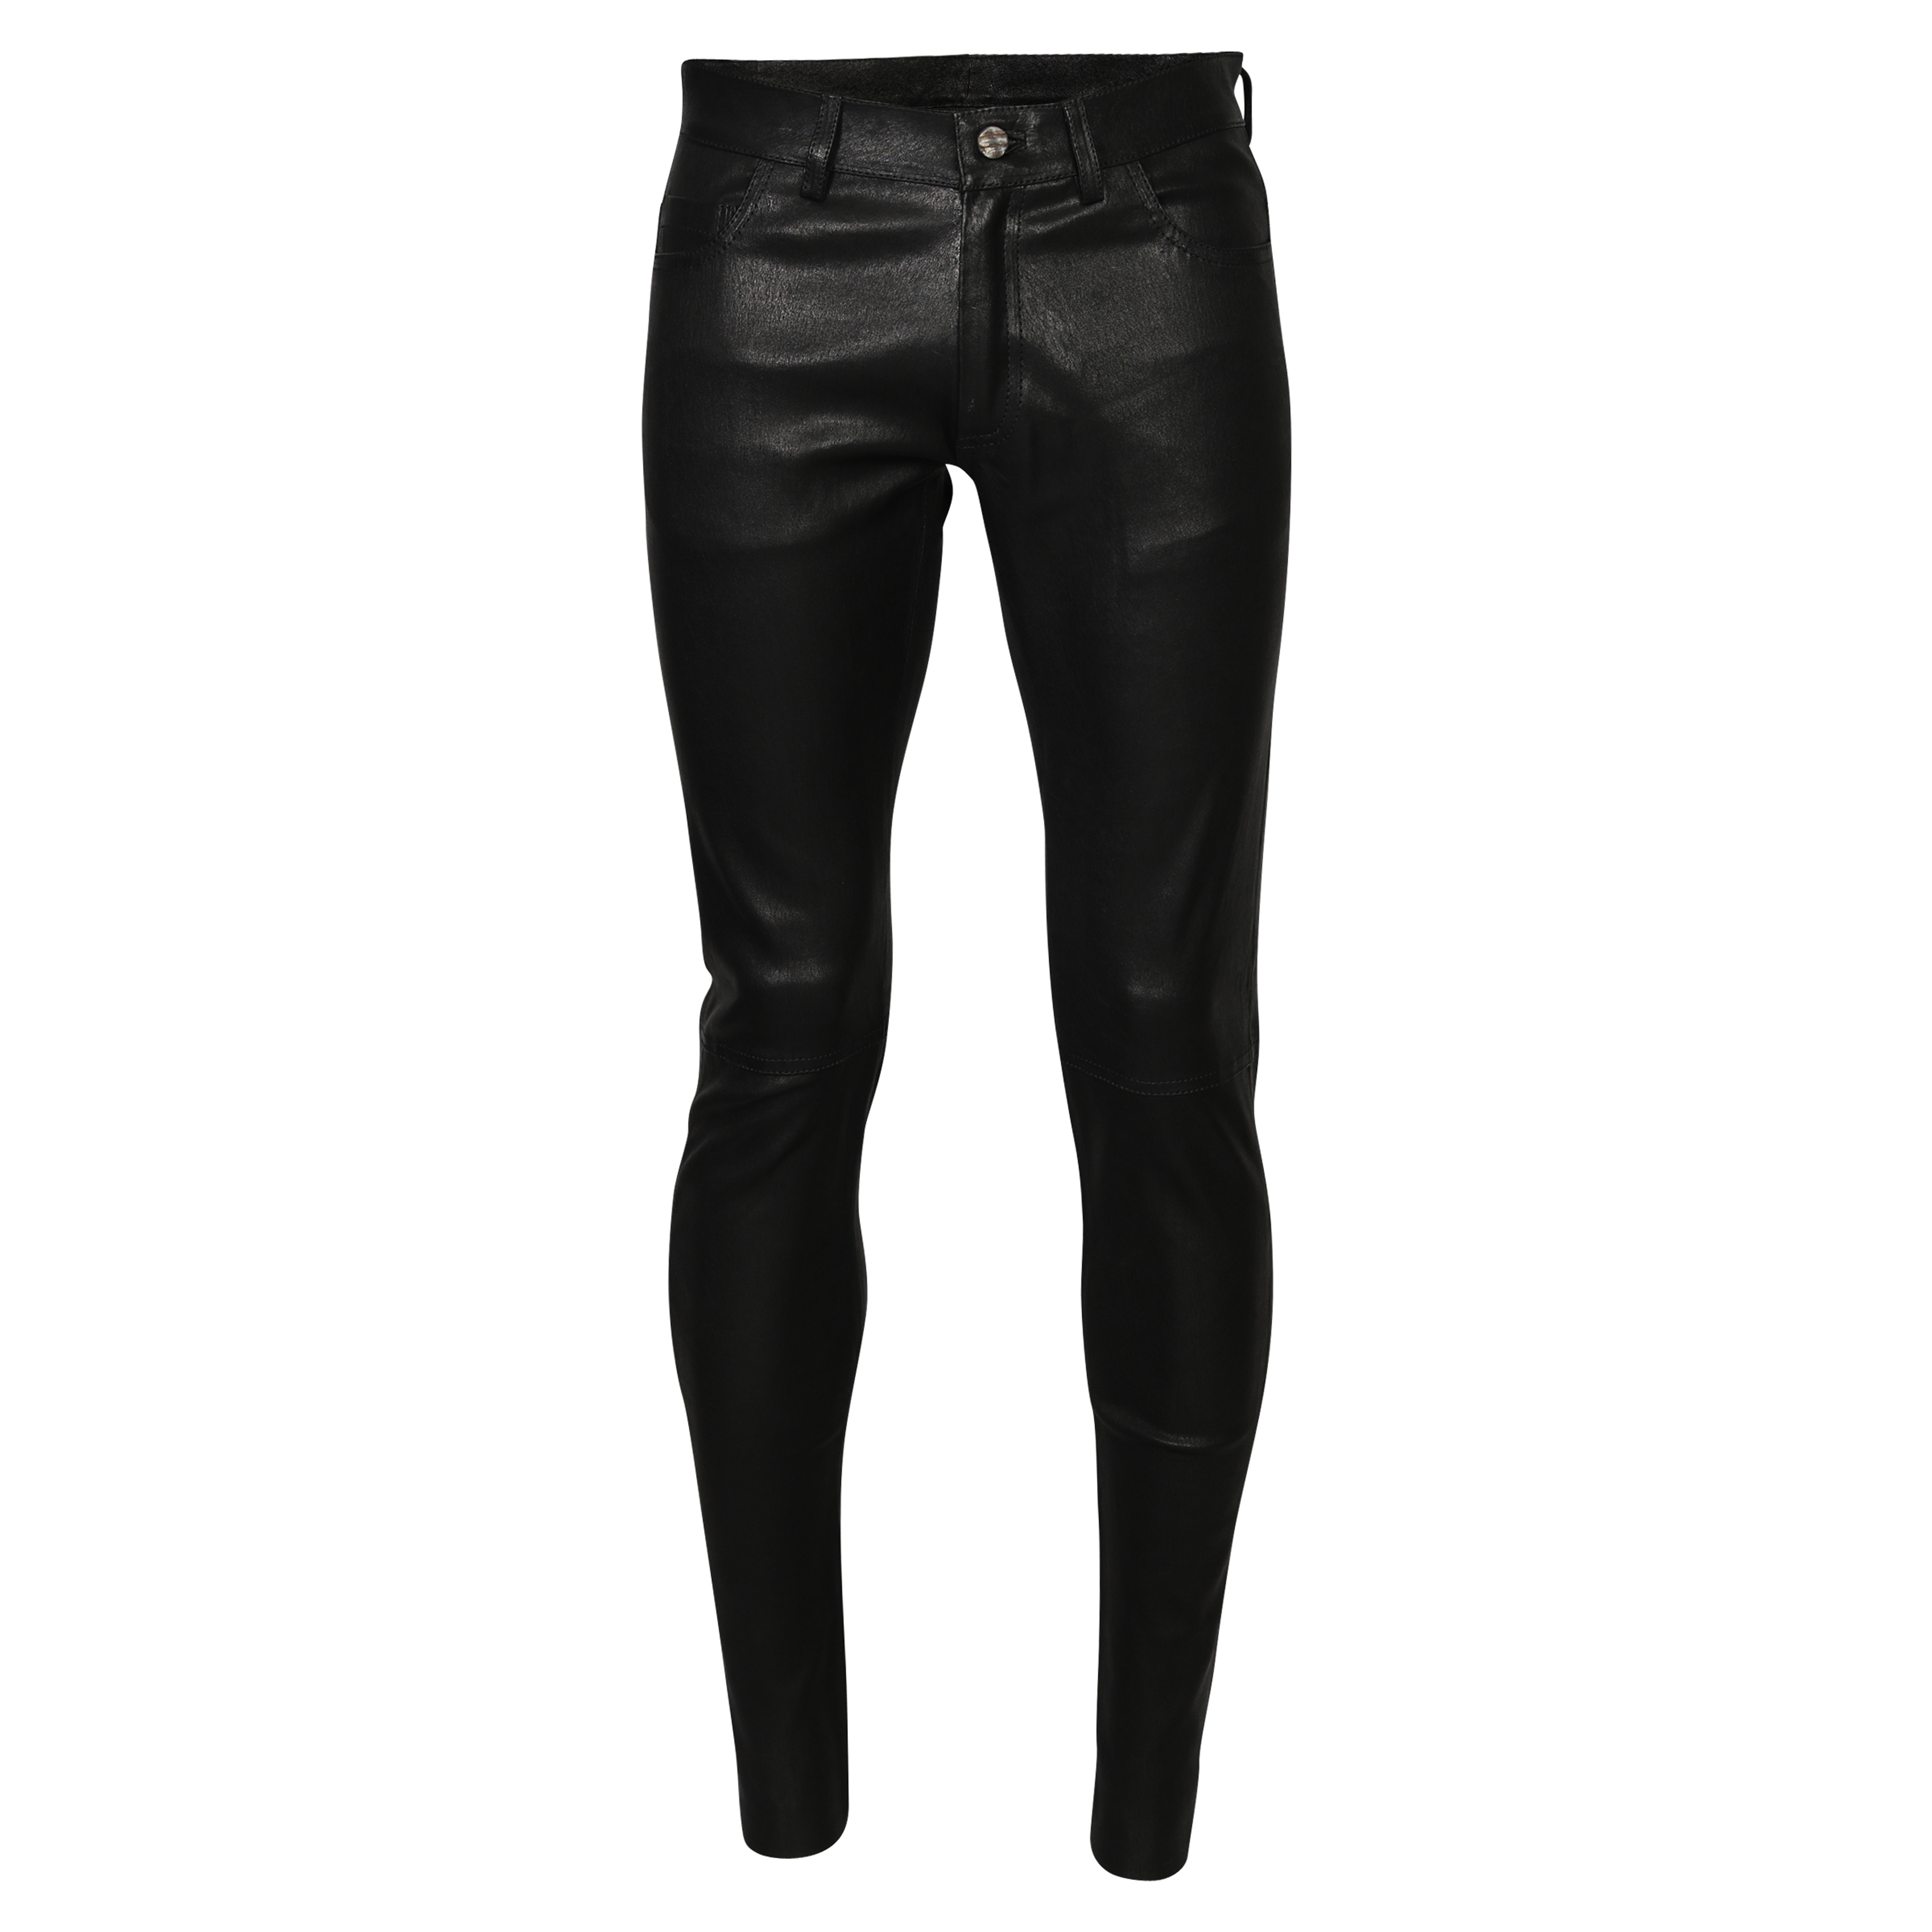 Giorgio Brato Leather Pant in Black 48